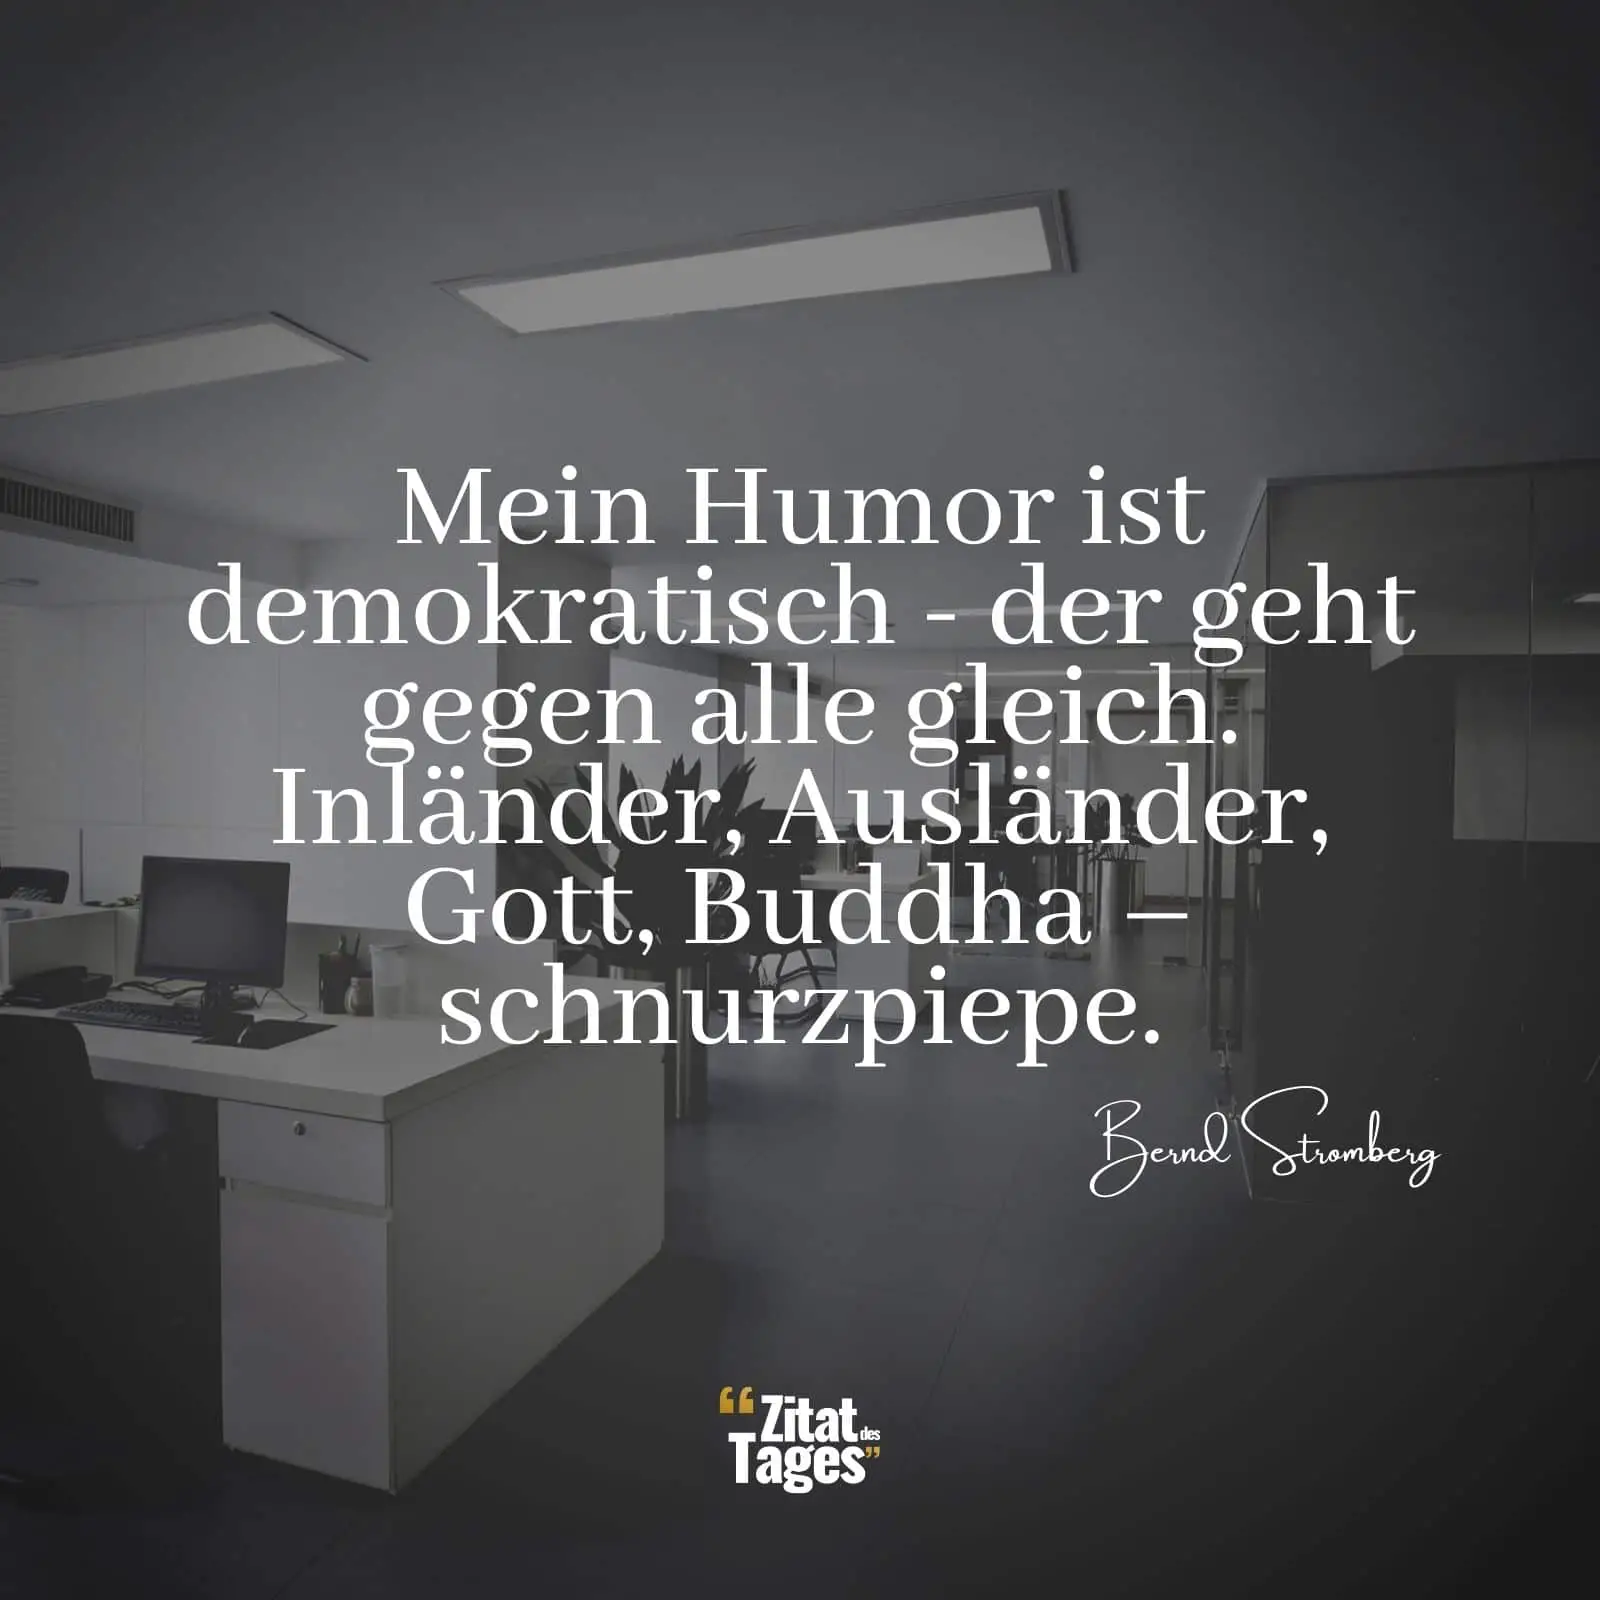 Mein Humor ist demokratisch - der geht gegen alle gleich. Inländer, Ausländer, Gott, Buddha – schnurzpiepe. - Bernd Stromberg